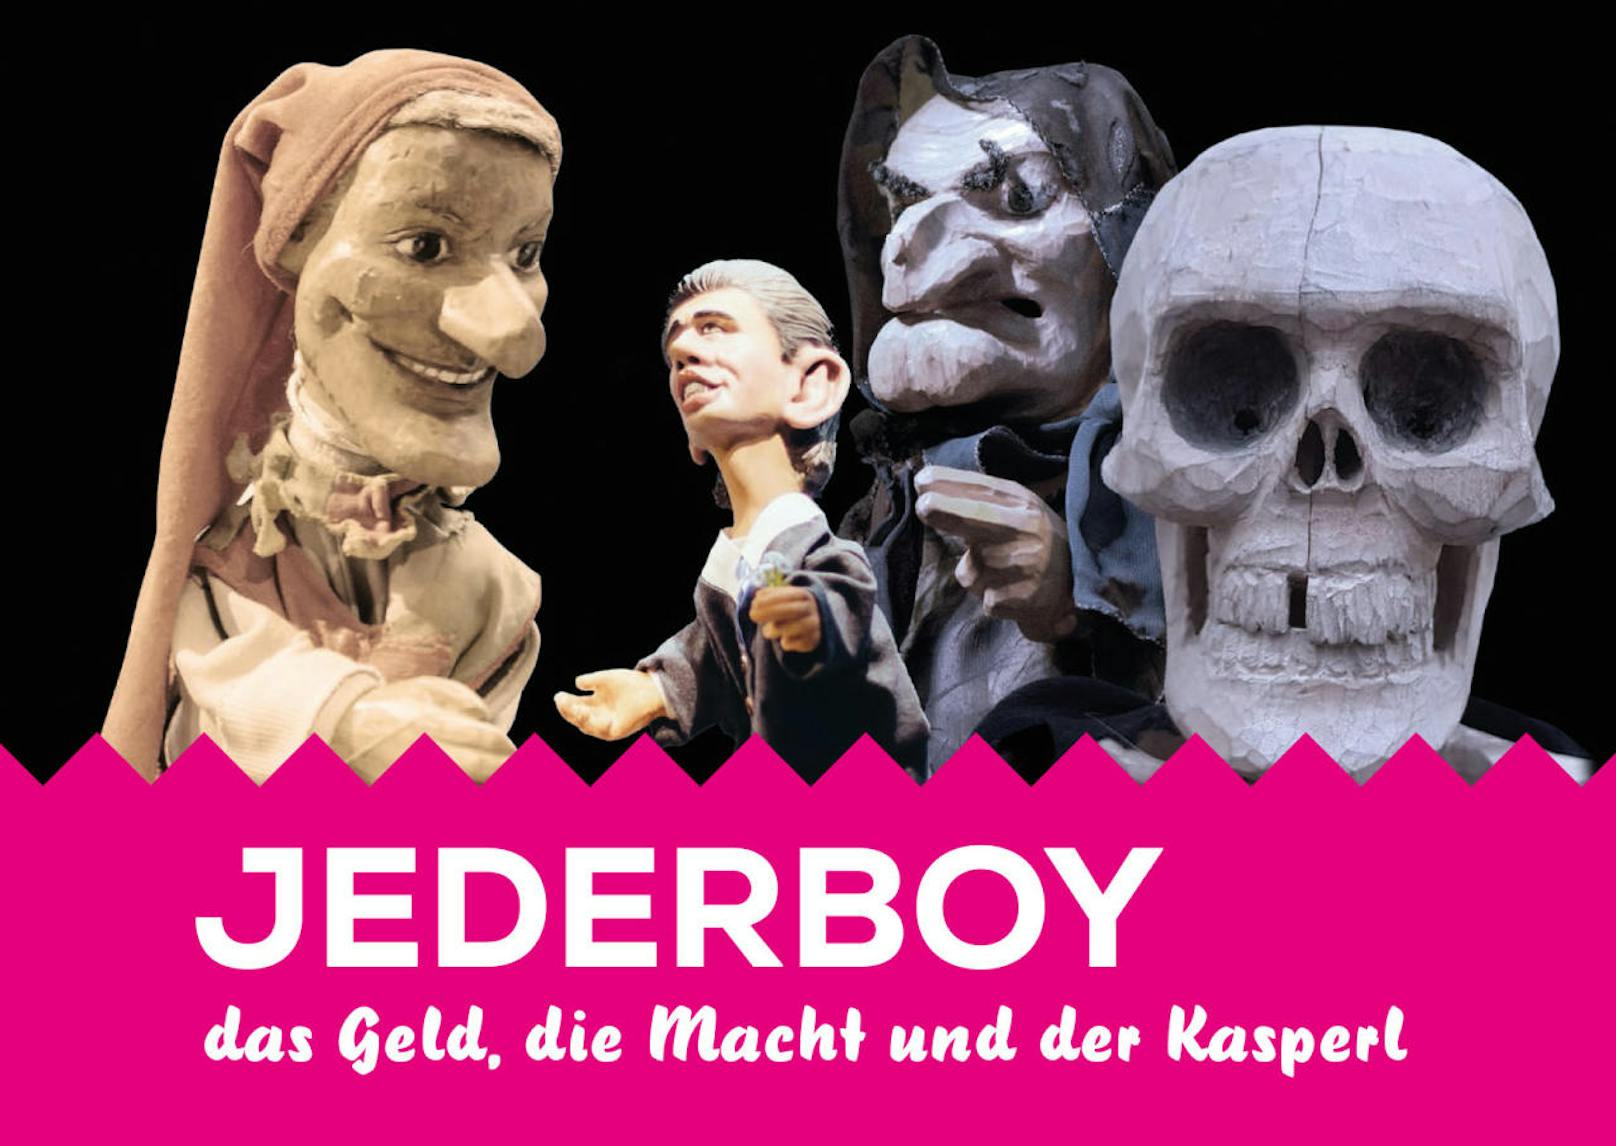 Der Original Wiener Praterkasperl hat jetzt ein Stück für Erwachsene am Start: "Jederboy - das Geld, die Macht und der Kasperl". Die Hauptfigur schaut Kanzler Kurz sehr ähnlich...